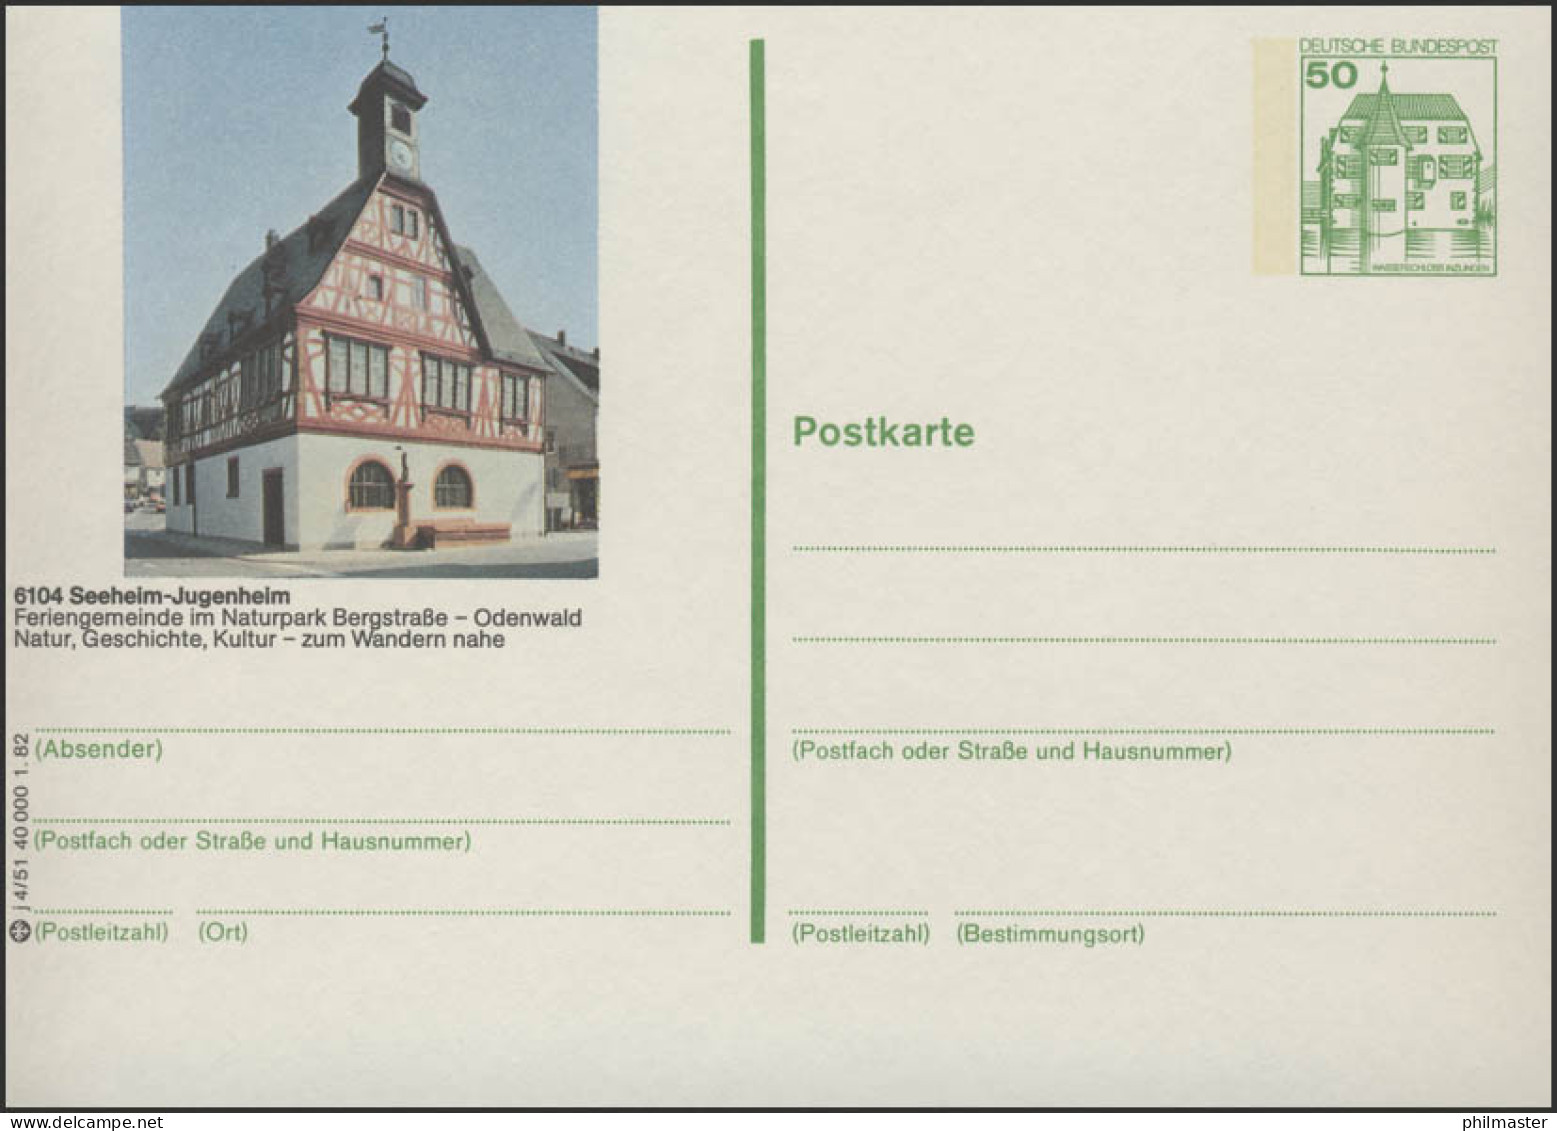 P134-j4/051 6104 Seeheim-Jugenheim - Rathaus ** - Bildpostkarten - Ungebraucht